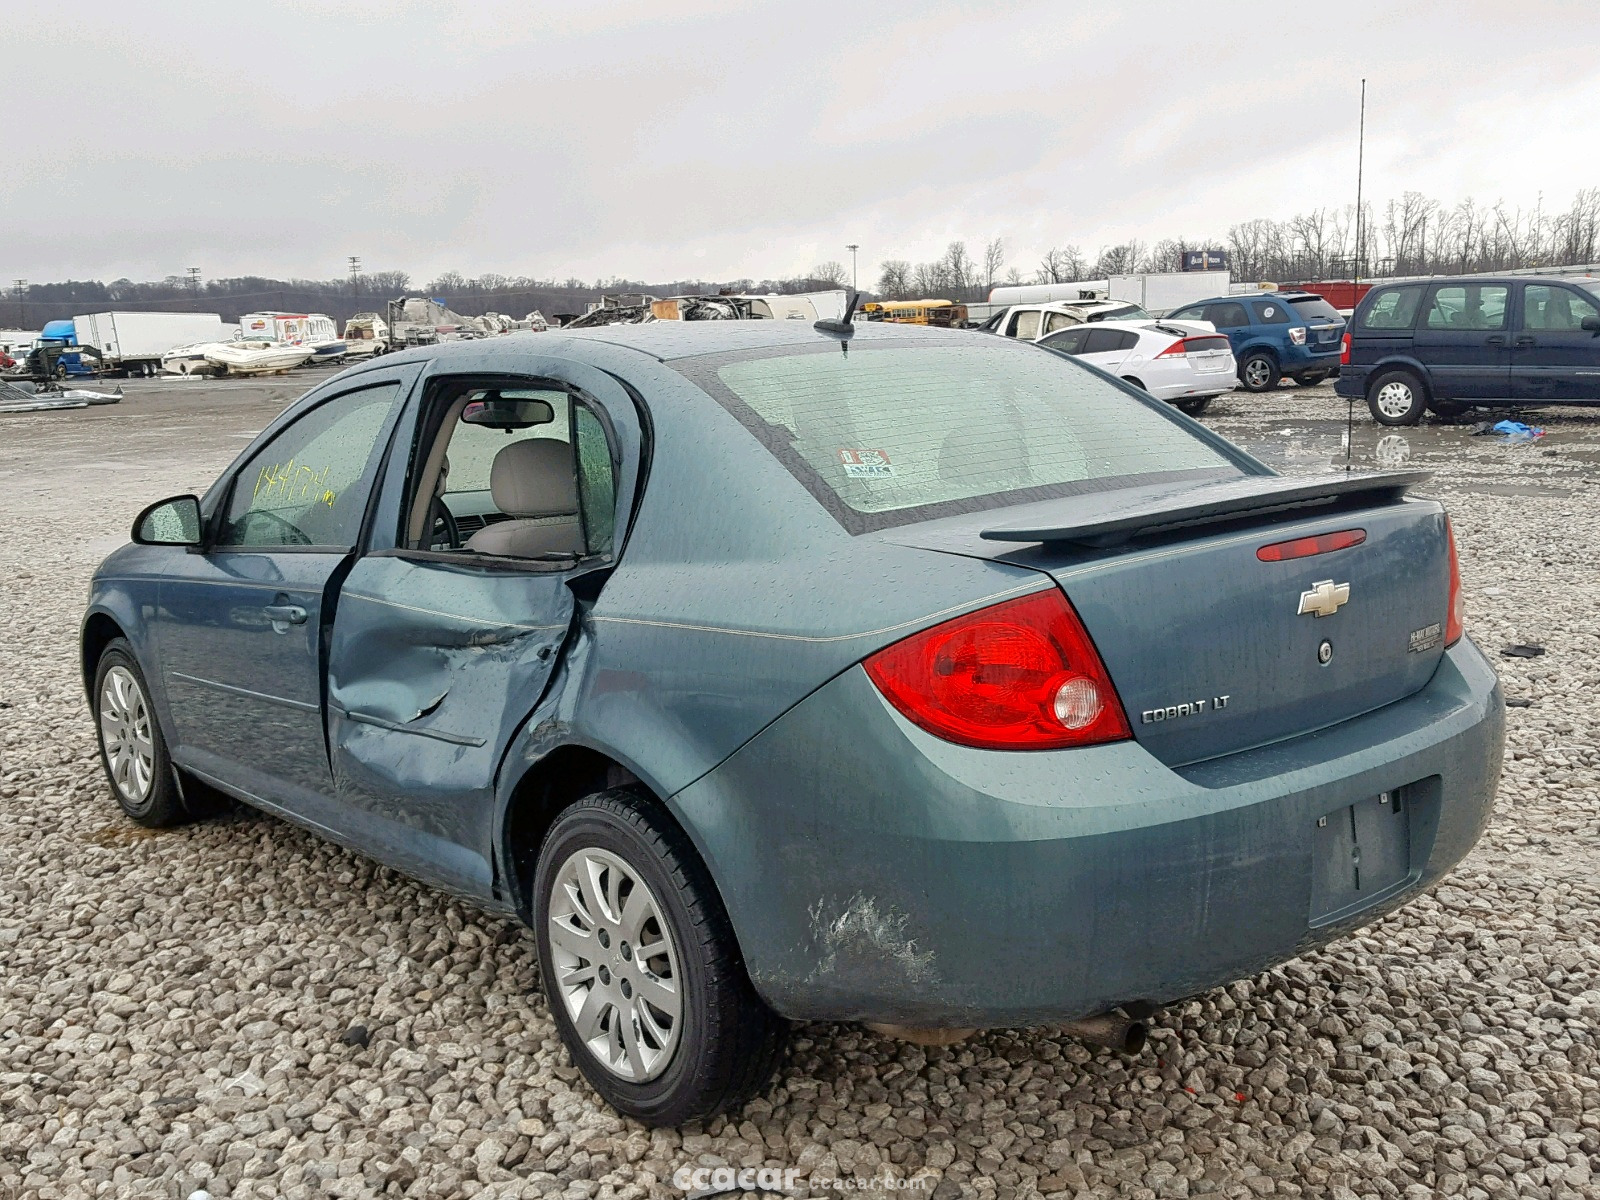 2010 Chevrolet Cobalt LT Salvage & Damaged Cars for Sale